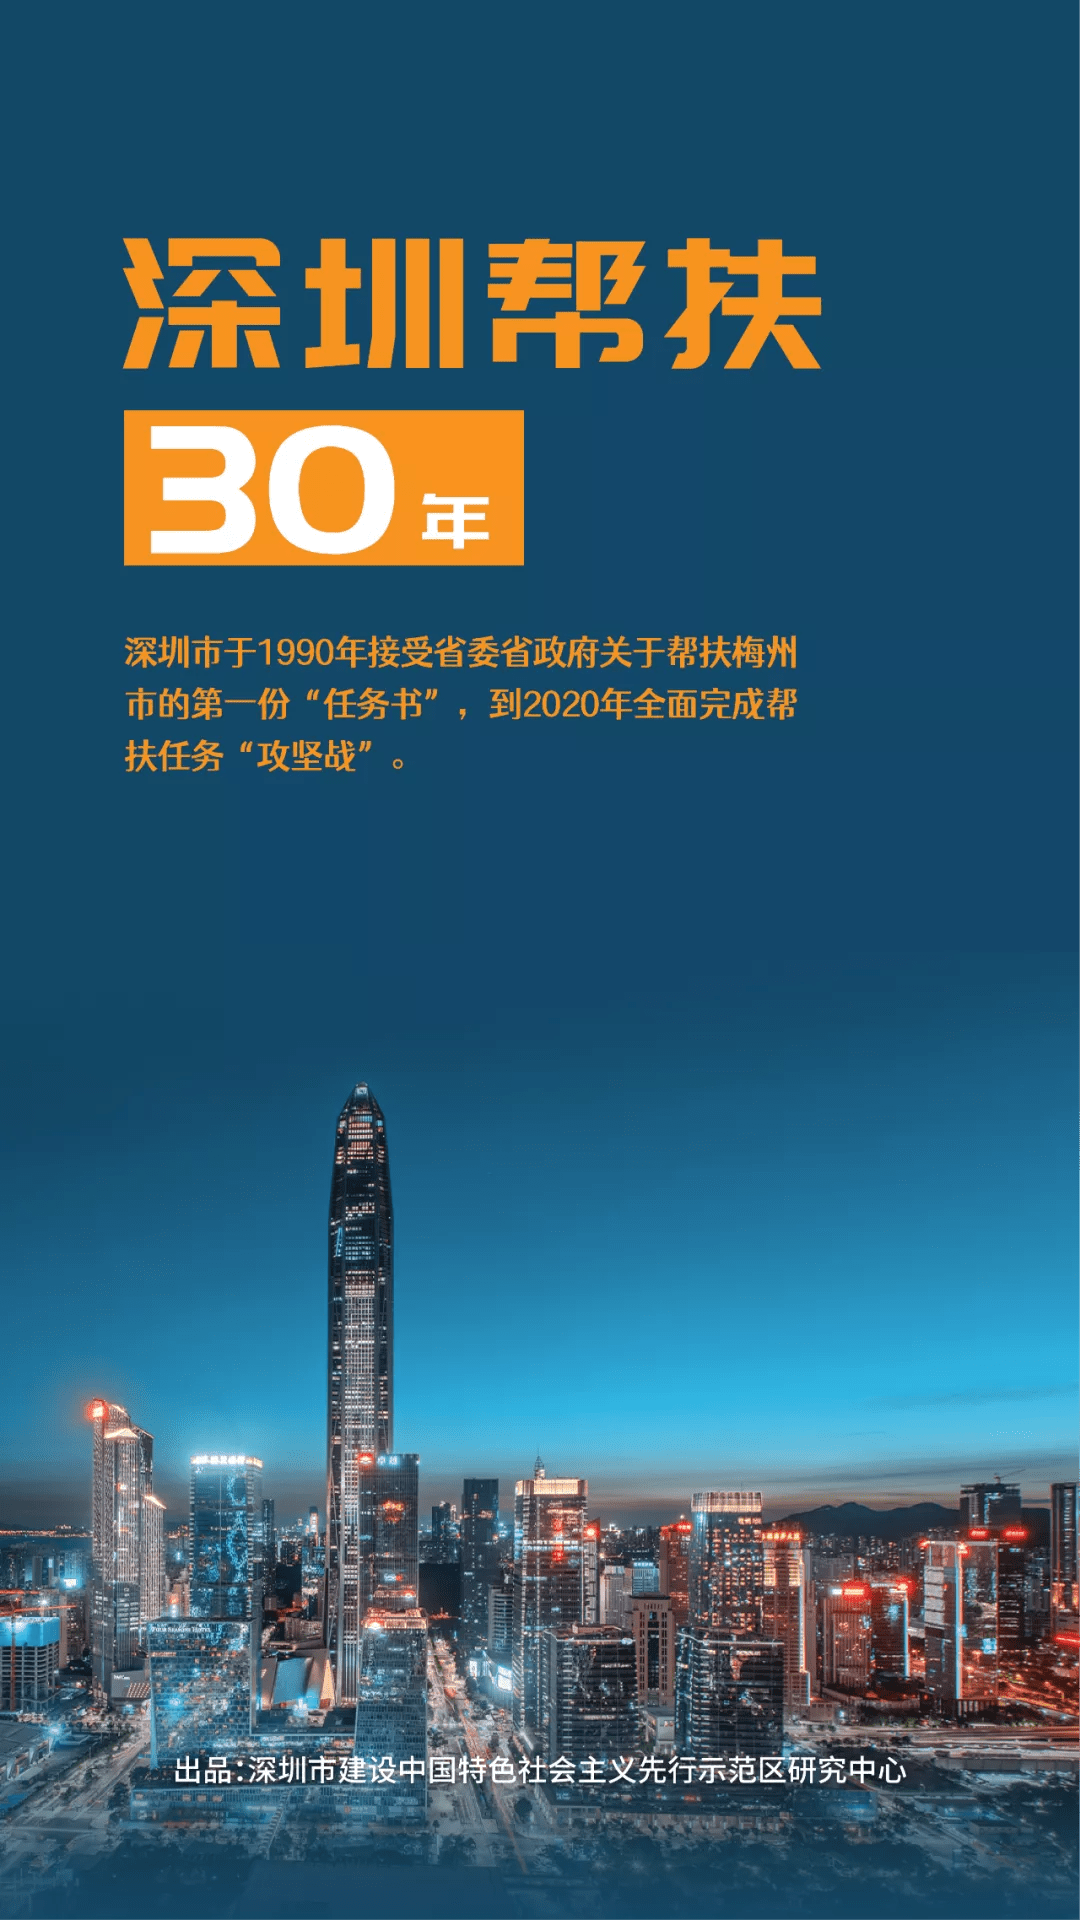 在线直播丨深圳帮扶30年成果暨新书发布会正在直播15张海报带你读懂